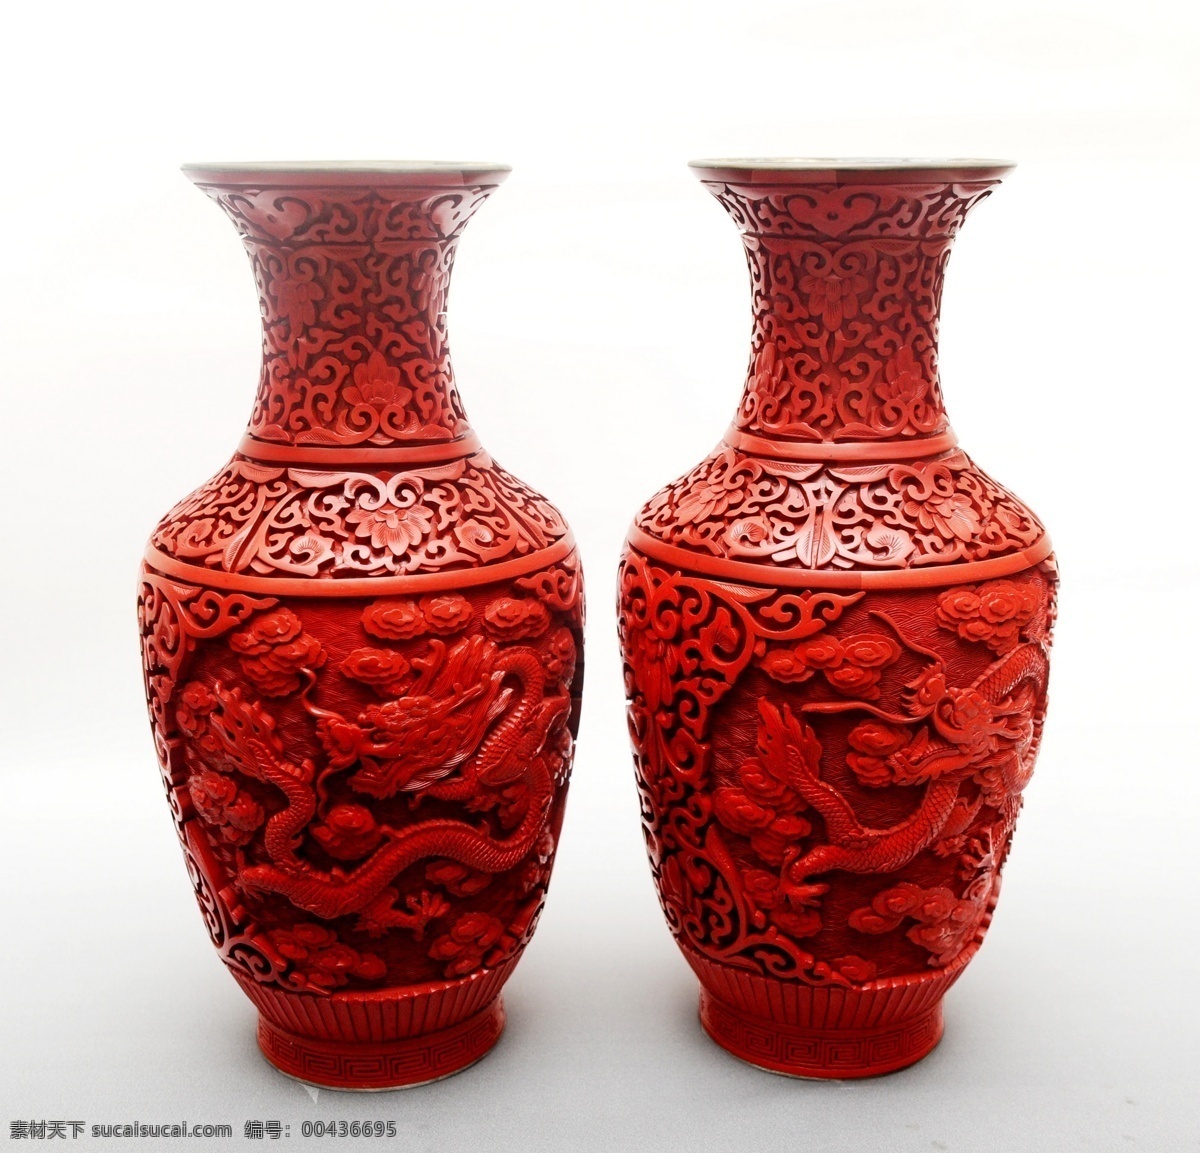 剔红龙纹观音 漆雕 雕漆 漆器 罐子 剔红 剔彩 珍品 国粹 传统文化 文化艺术